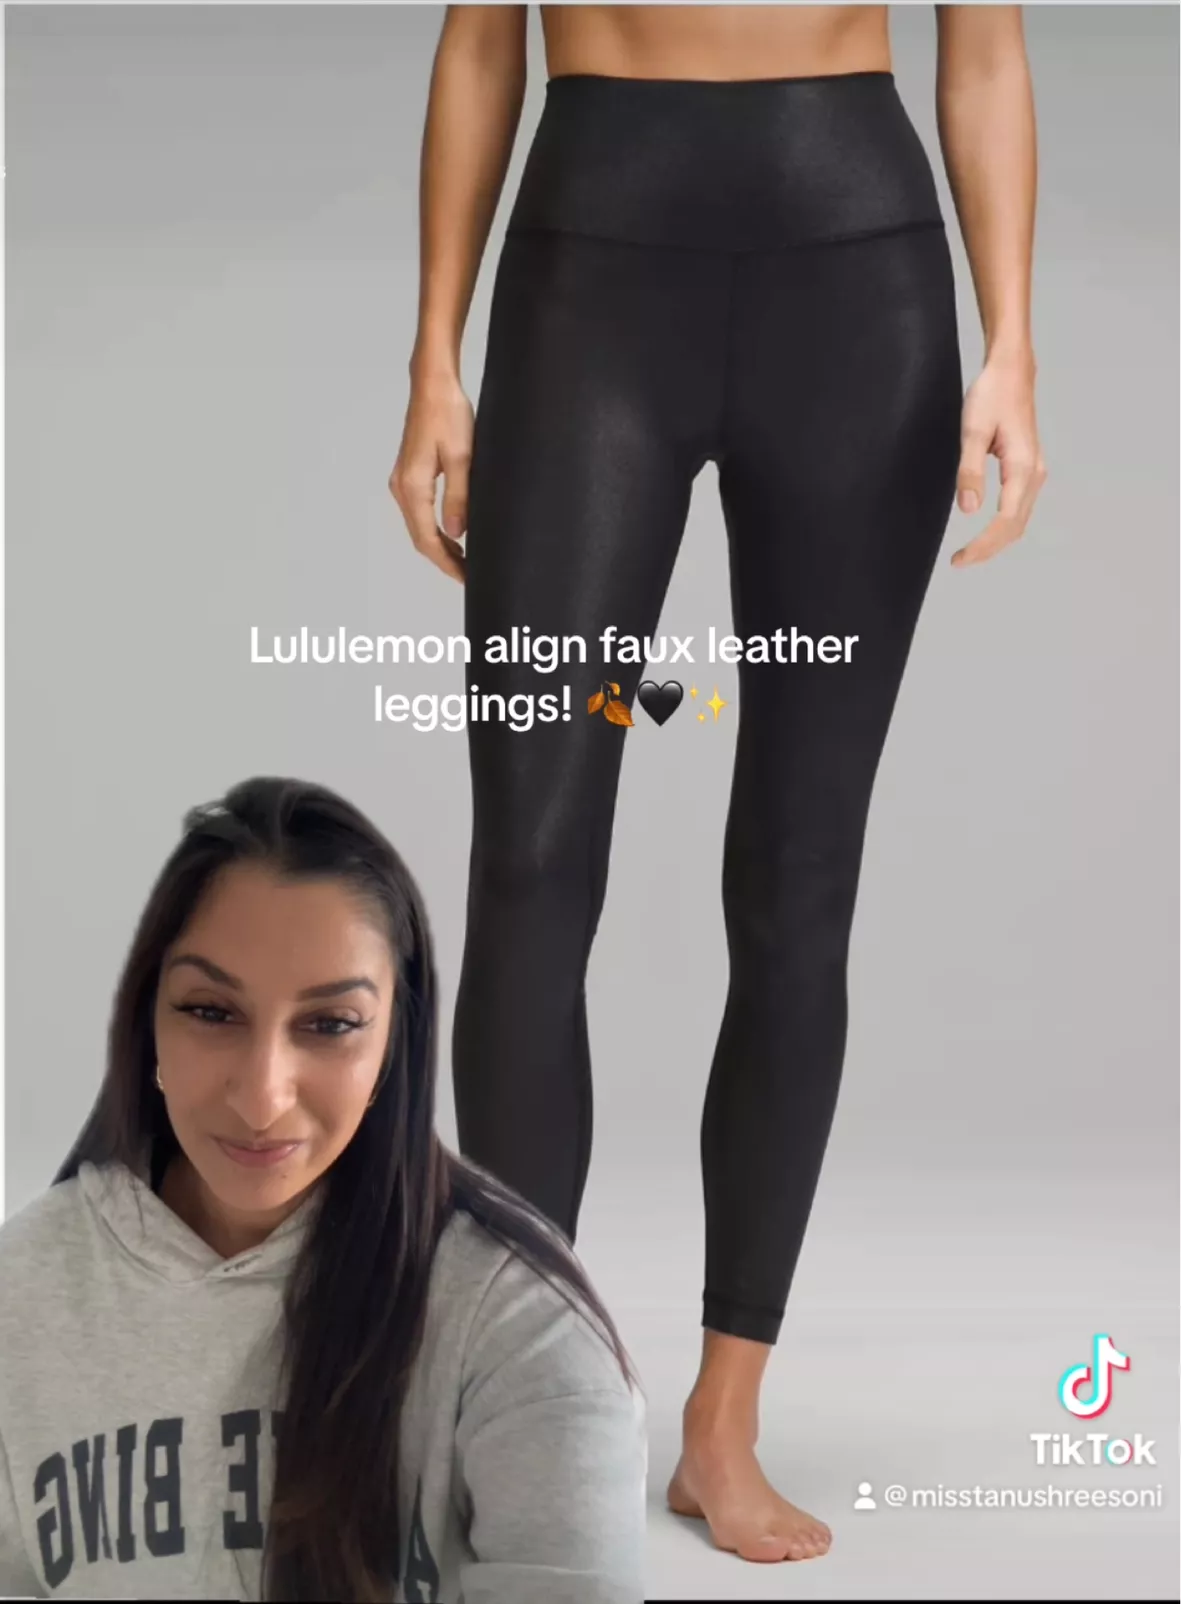 lululemon Align™ High-Rise Pant 28, Women's Leggings/Tights, lululemon